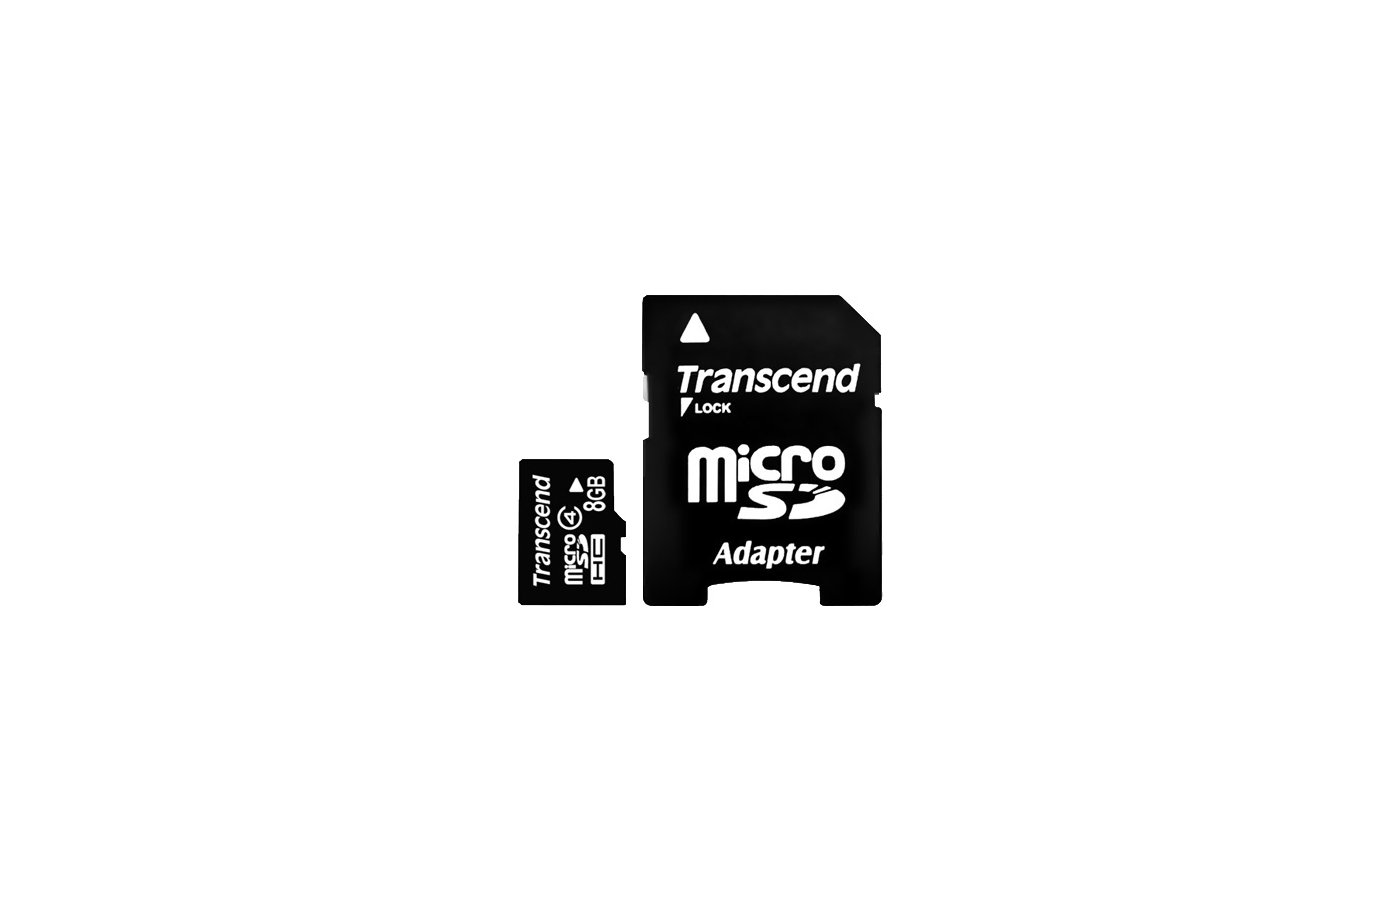 Память transcend microsdhc. Карта памяти MICROSDHC 16 ГБ class 10 Transcend. Карта памяти MICROSDHC 8 GB. Микро карта памяти MICROSDHC 4 GB. Память Transcend (MICROSDHC) 8gb + адаптер.